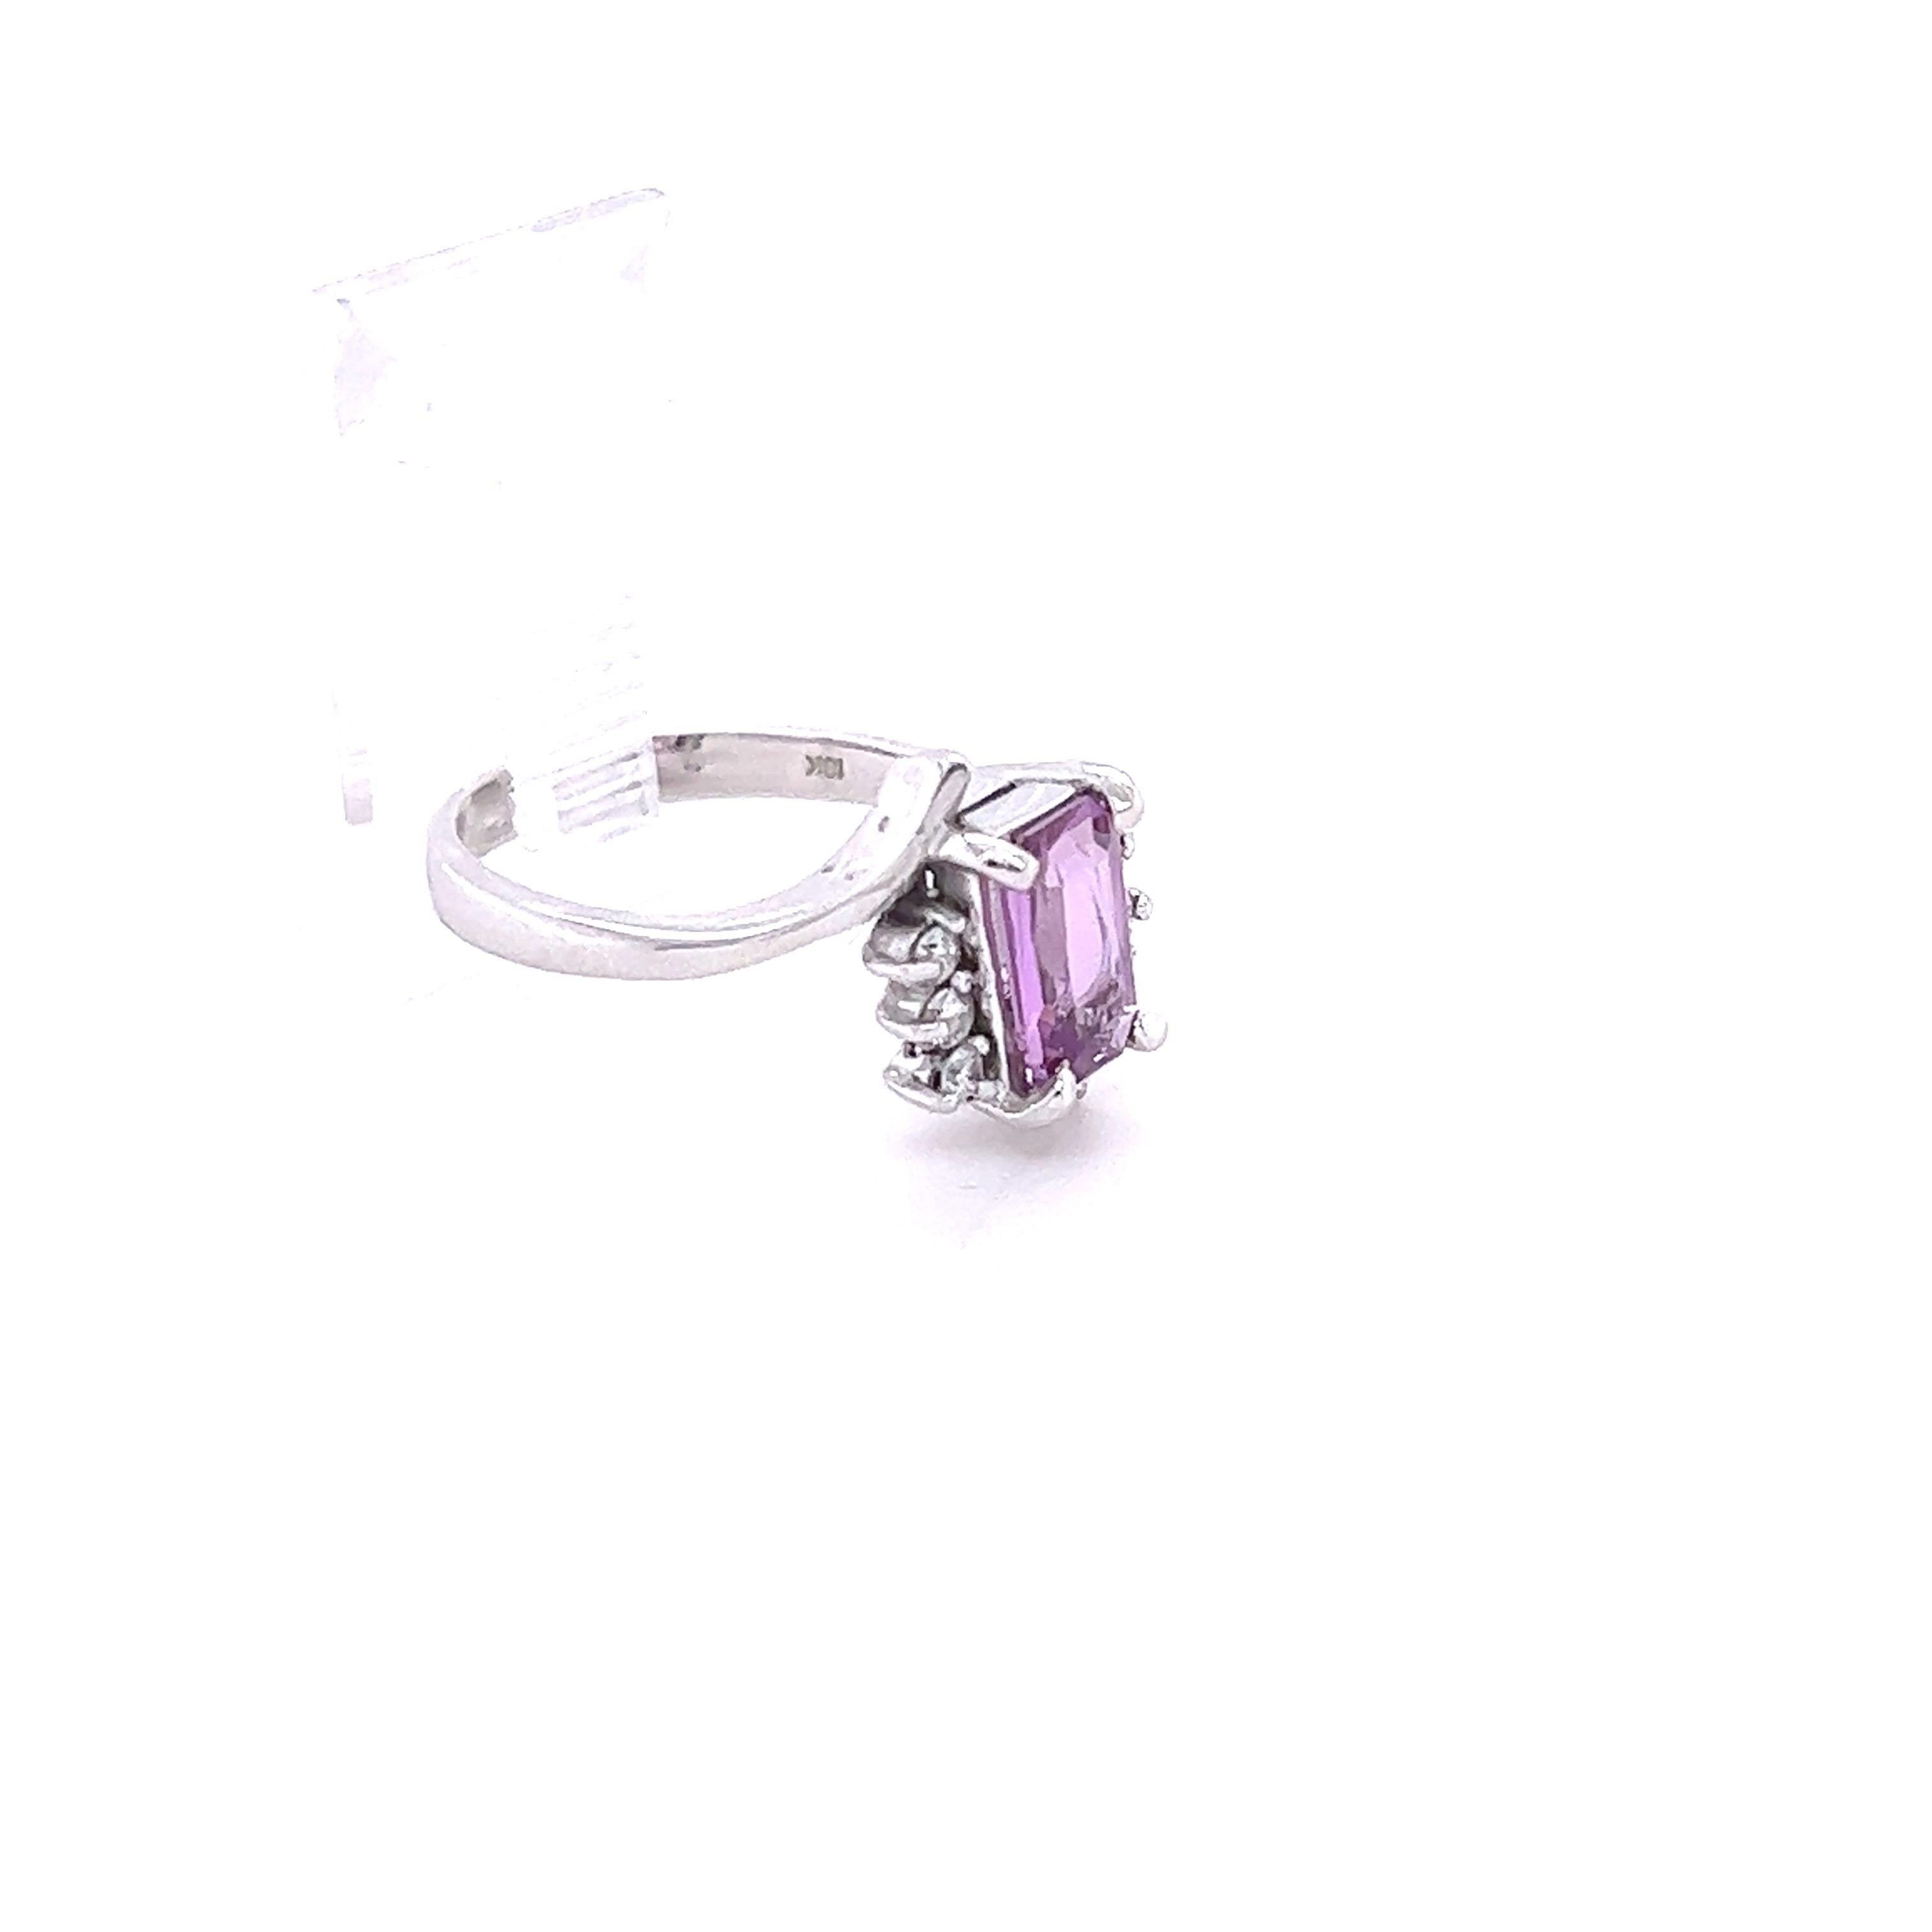 Dieser schöne Ring hat eine natürliche Emerald Cut Pink Sapphire, die 1,37 Karat wiegt und misst etwa 9 mm x 5 mm. Der rosa Saphir ist GIA-zertifiziert und weist KEINE Anzeichen von Erhitzung auf. Die GIA-Zertifikatsnummer lautet: 5222050348.

Der